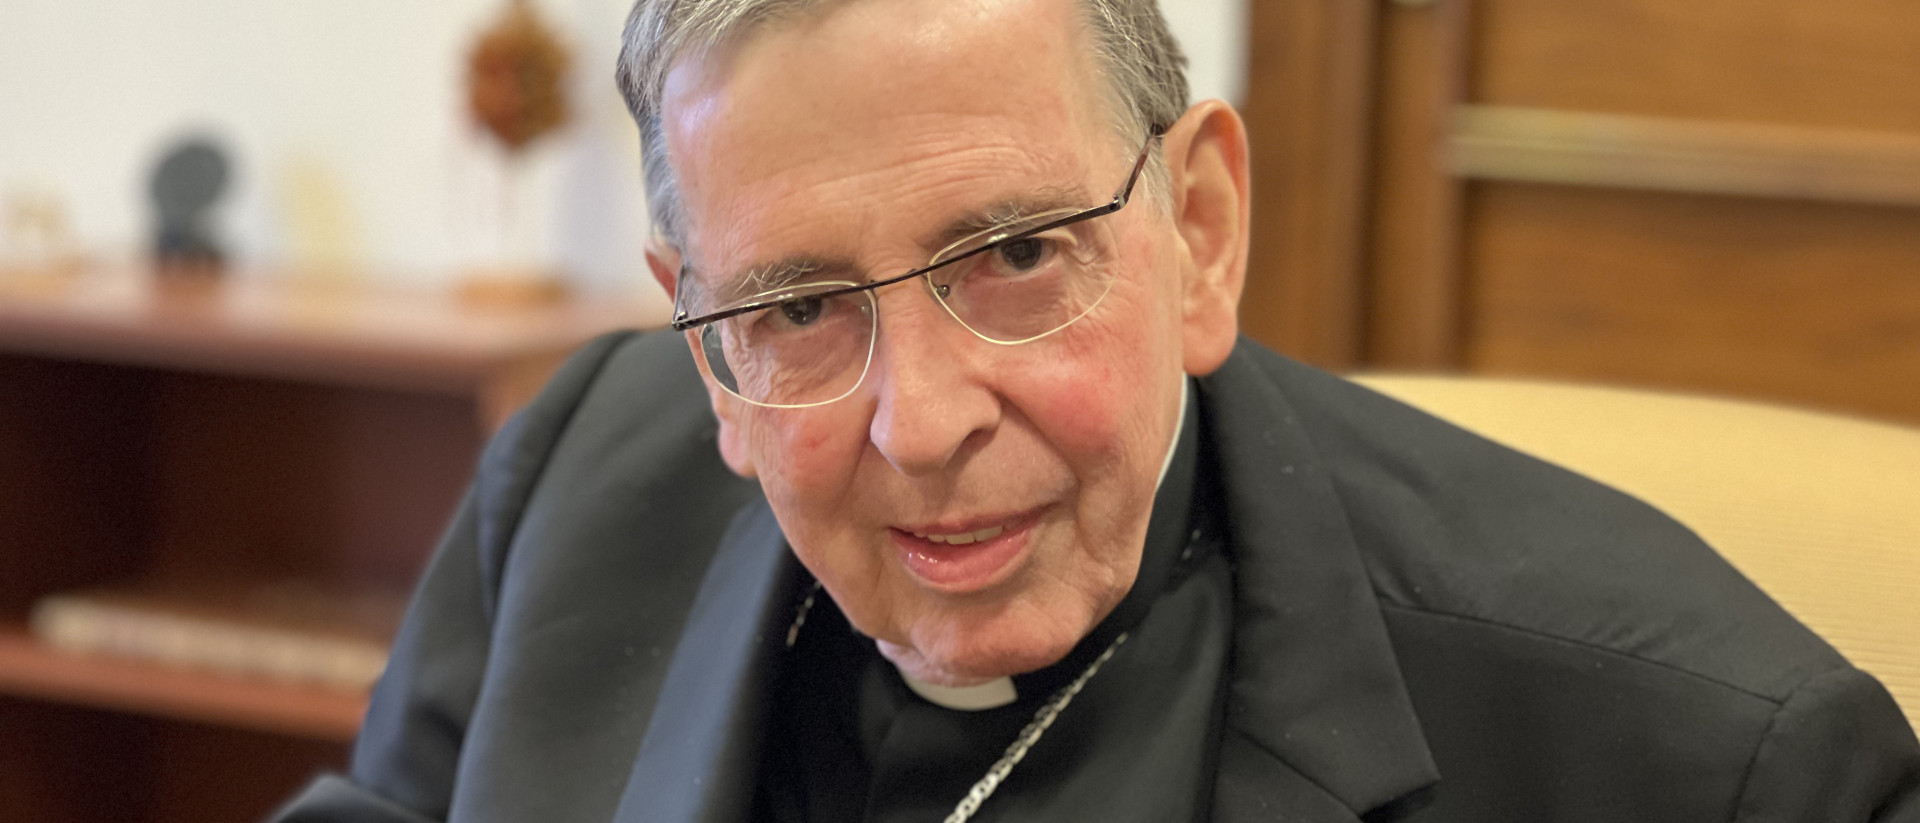 Le cardinal Kurt Koch a participé au Synode sur la synodalité en tant que membre de la Curie | © Annalena Müller